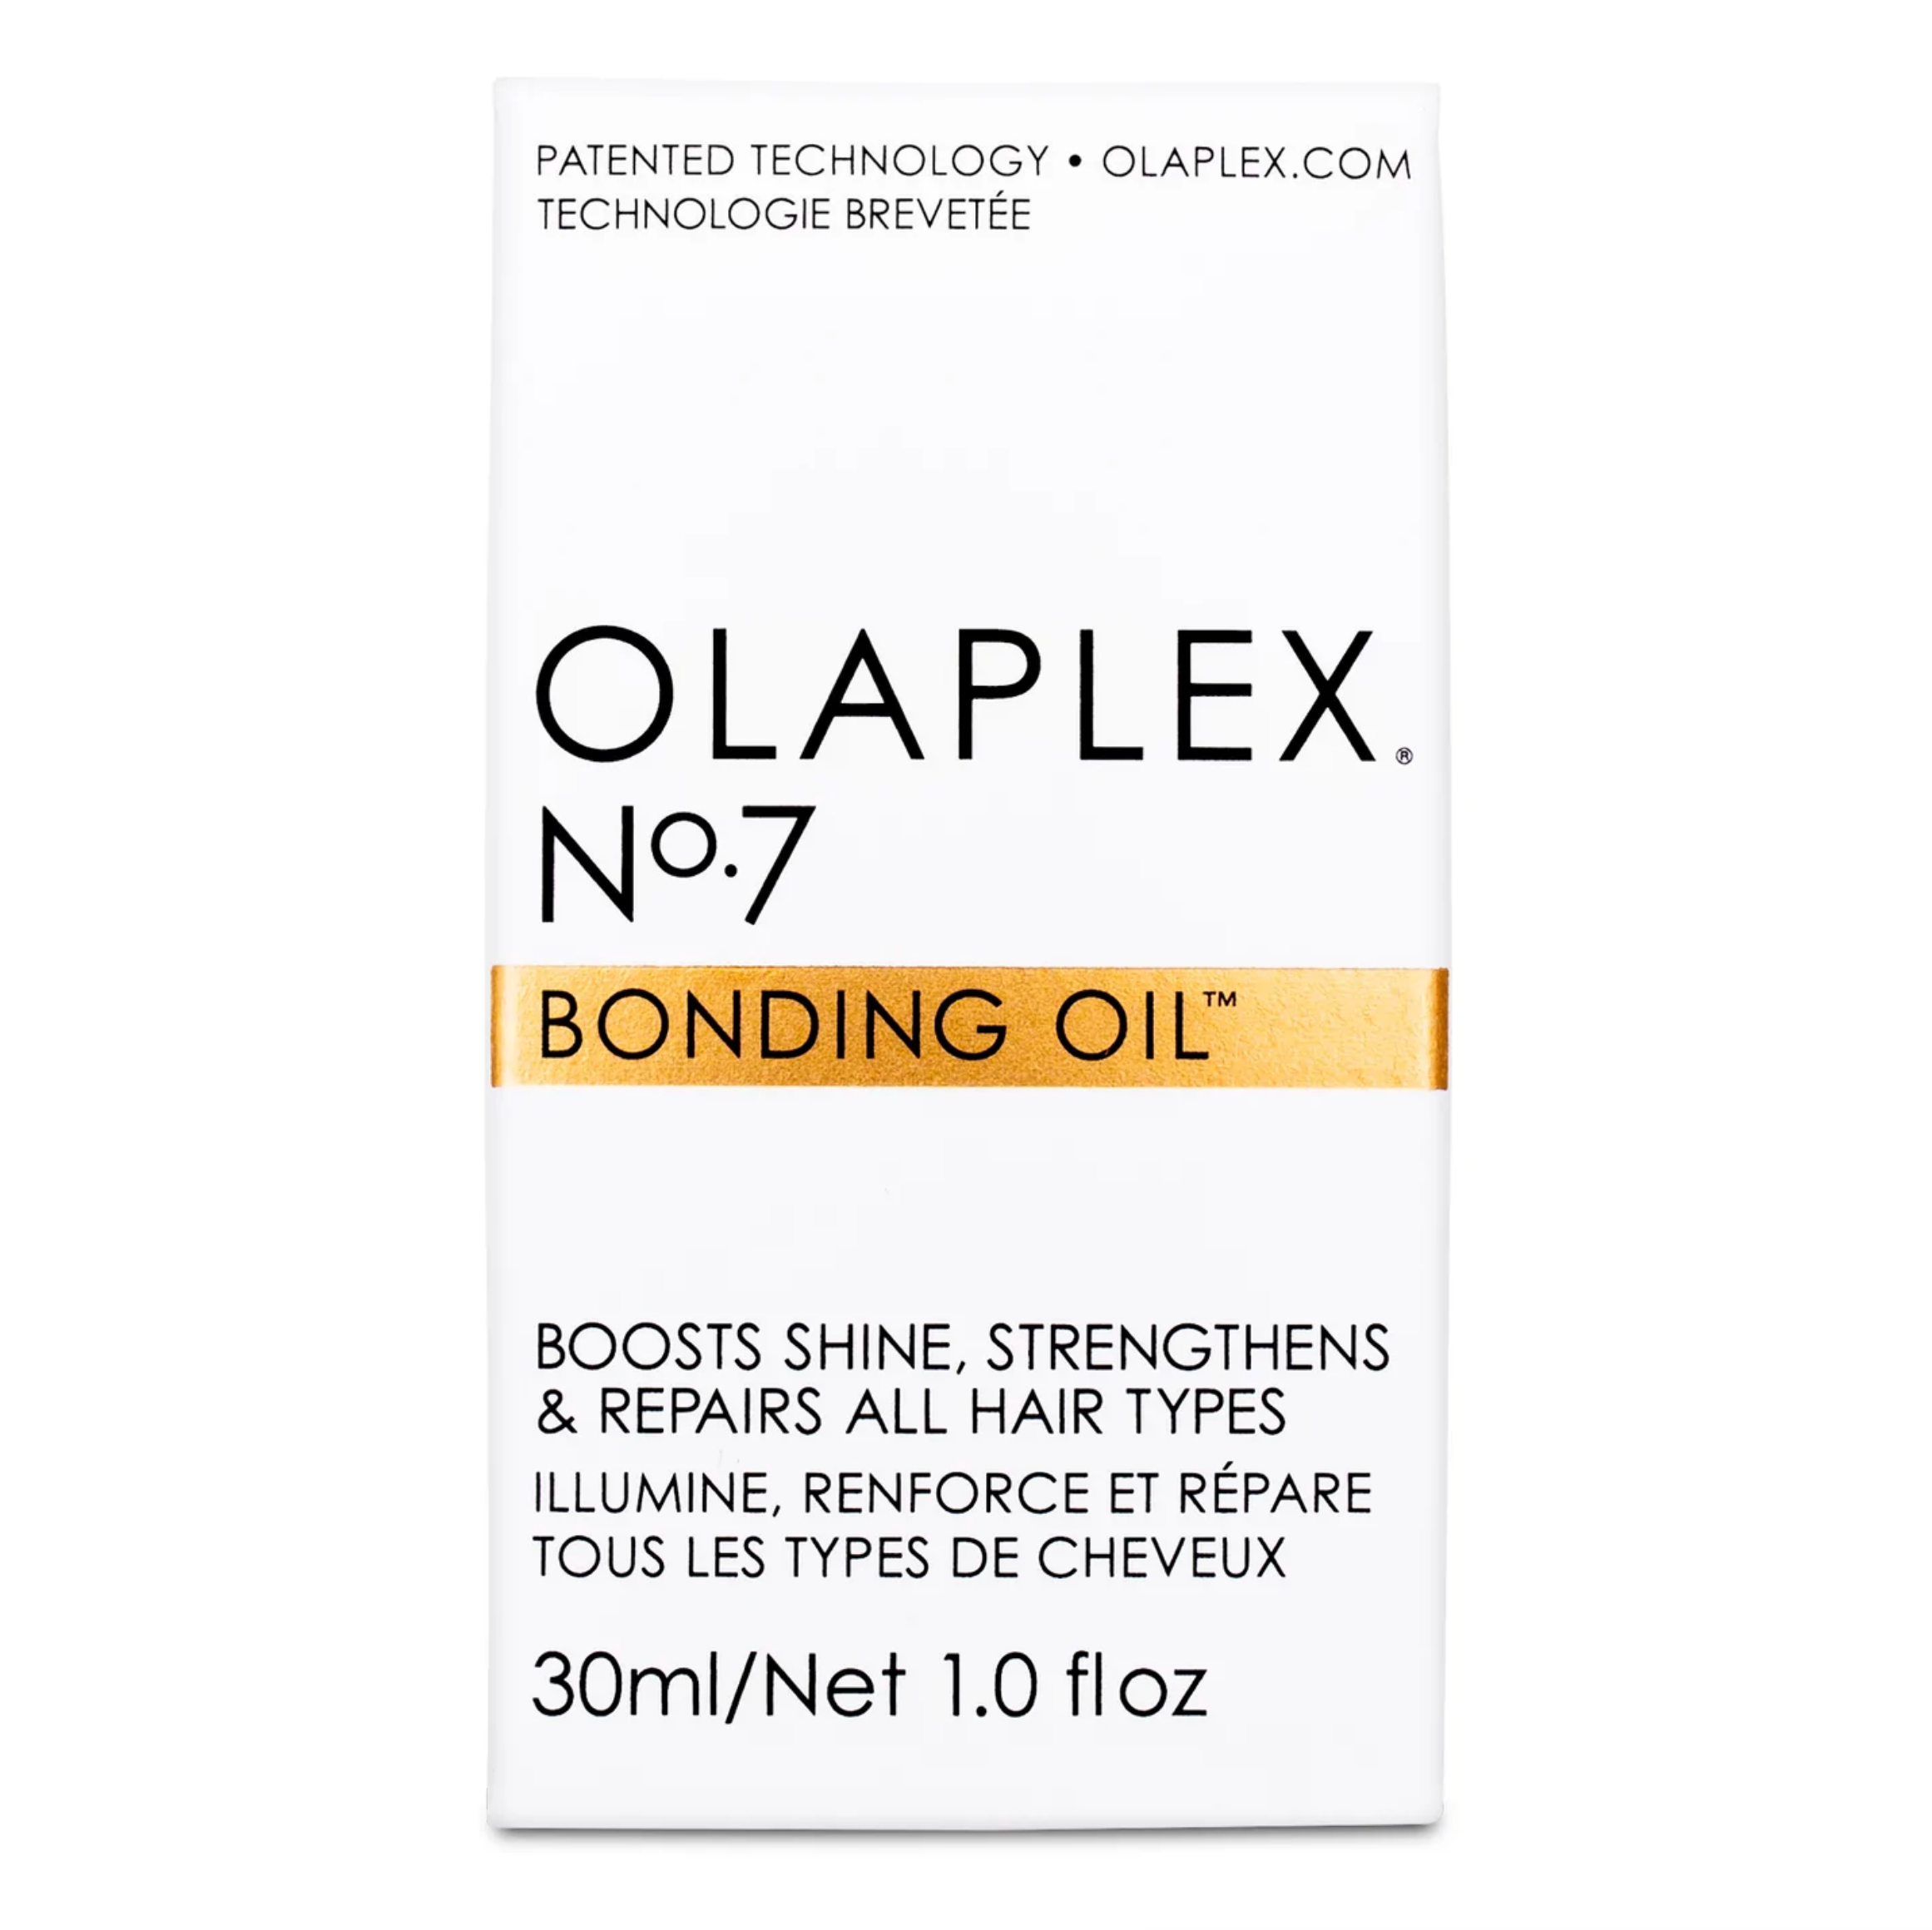 Huile qui illumine, renforce et répare tous les types de cheveux Olaplex N°7 Bond oil - Crème Salon